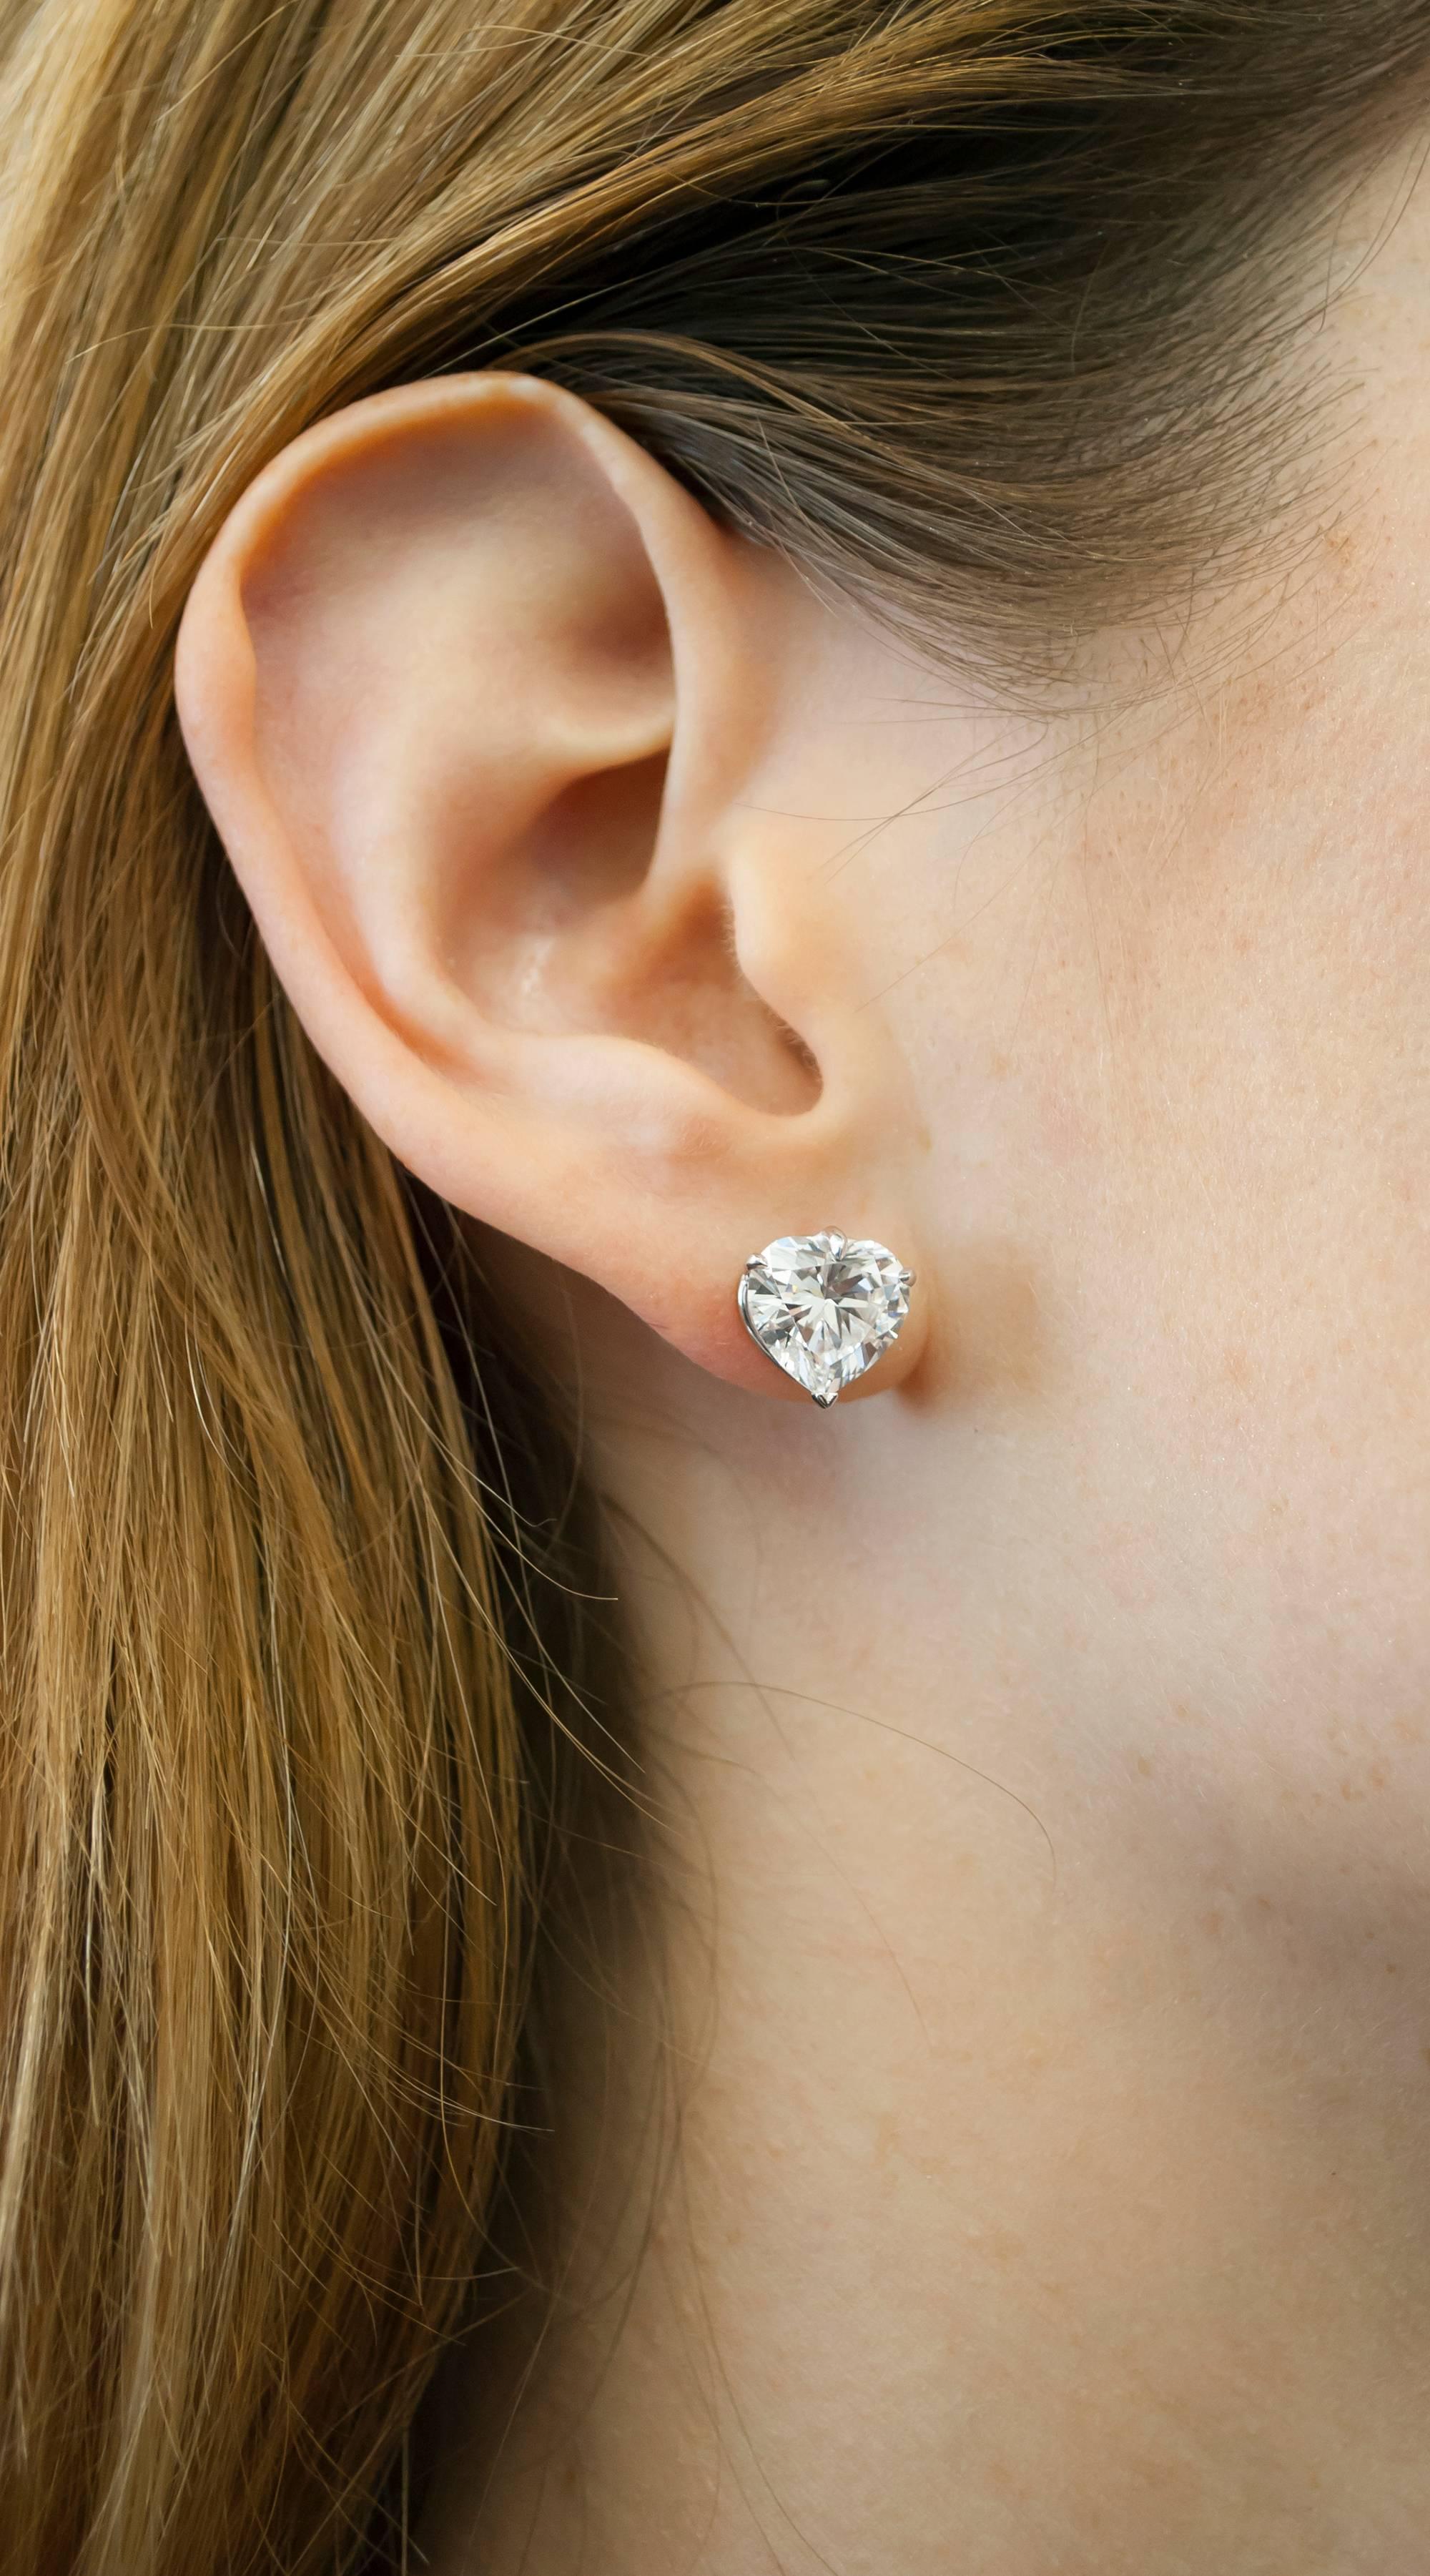 EXCEPTIONAL VVS Clarity GIA zertifiziert 4 Karat Herzform Diamanten Ohrringe
Ausgezeichnetes Polnisch
Ausgezeichnete Symmetrie 
Keine Fluoreszenz